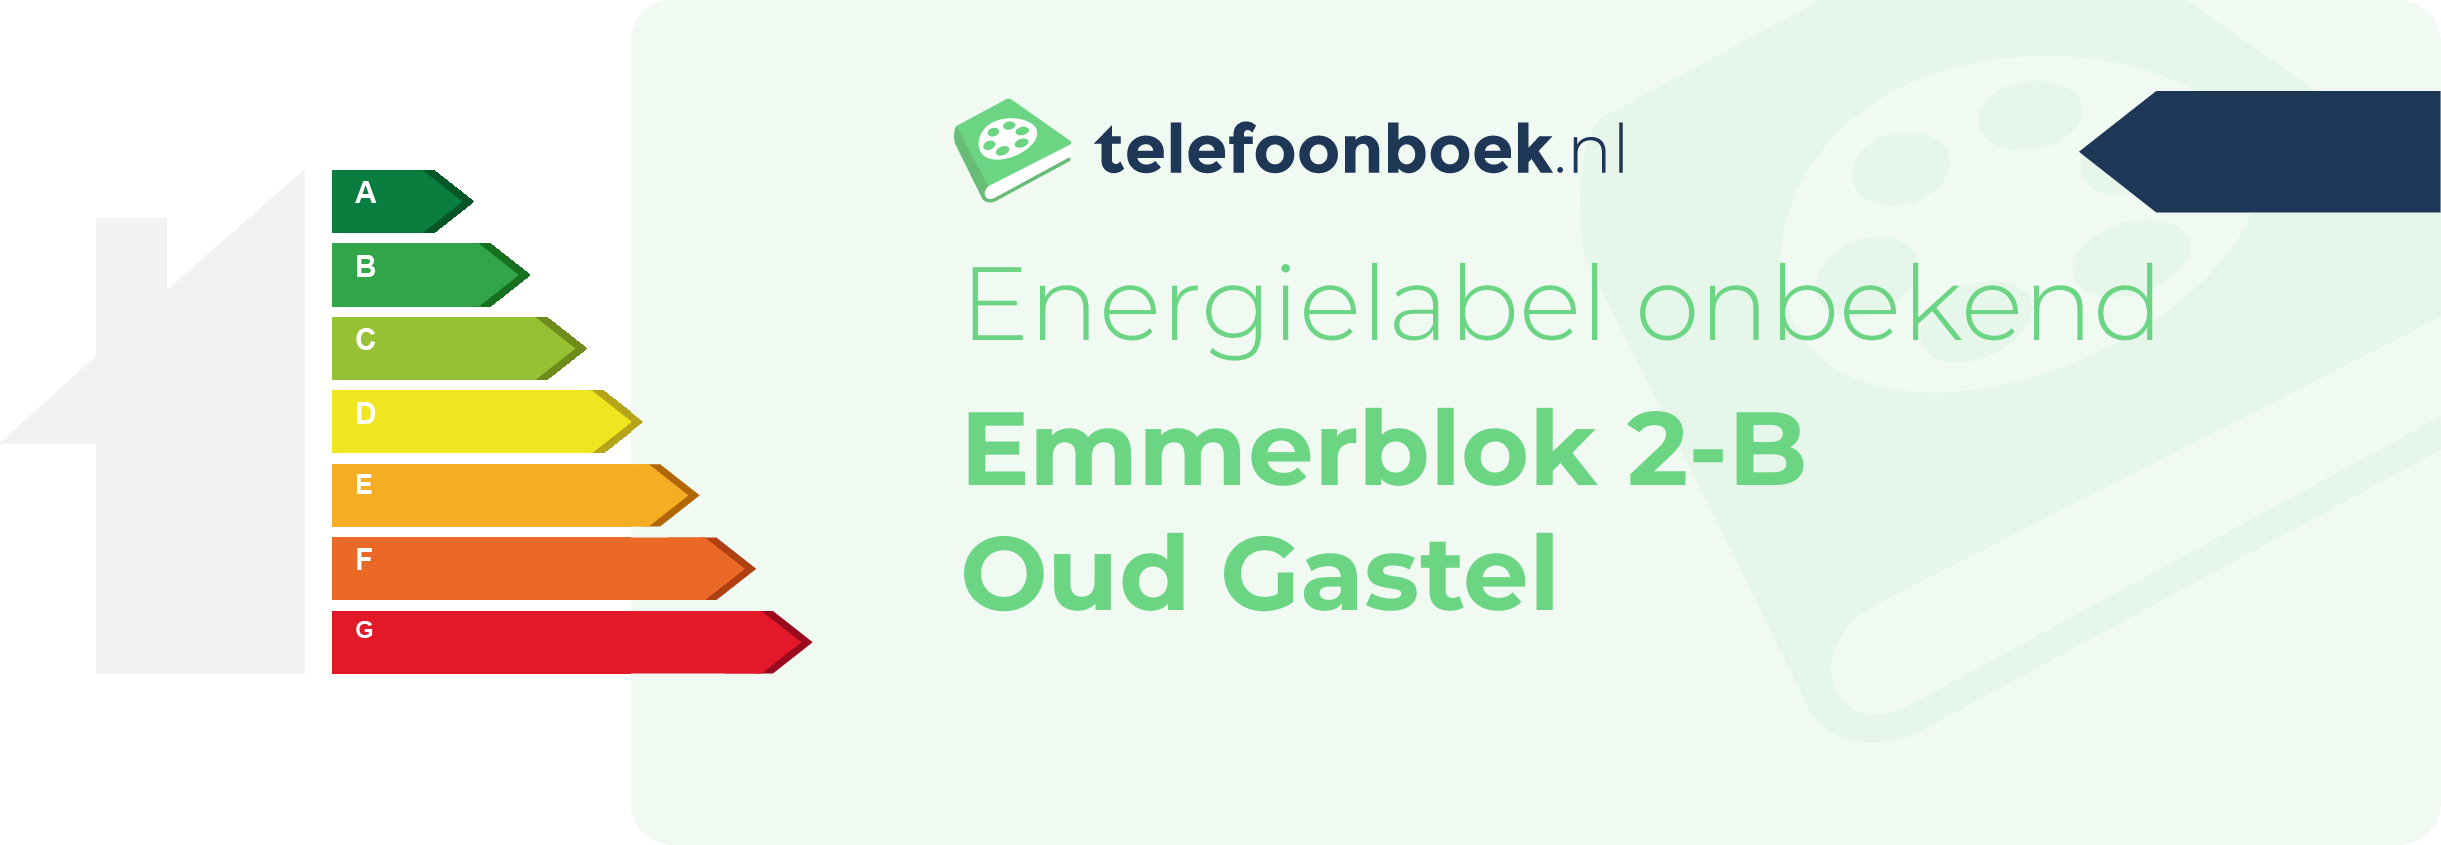 Energielabel Emmerblok 2-B Oud Gastel